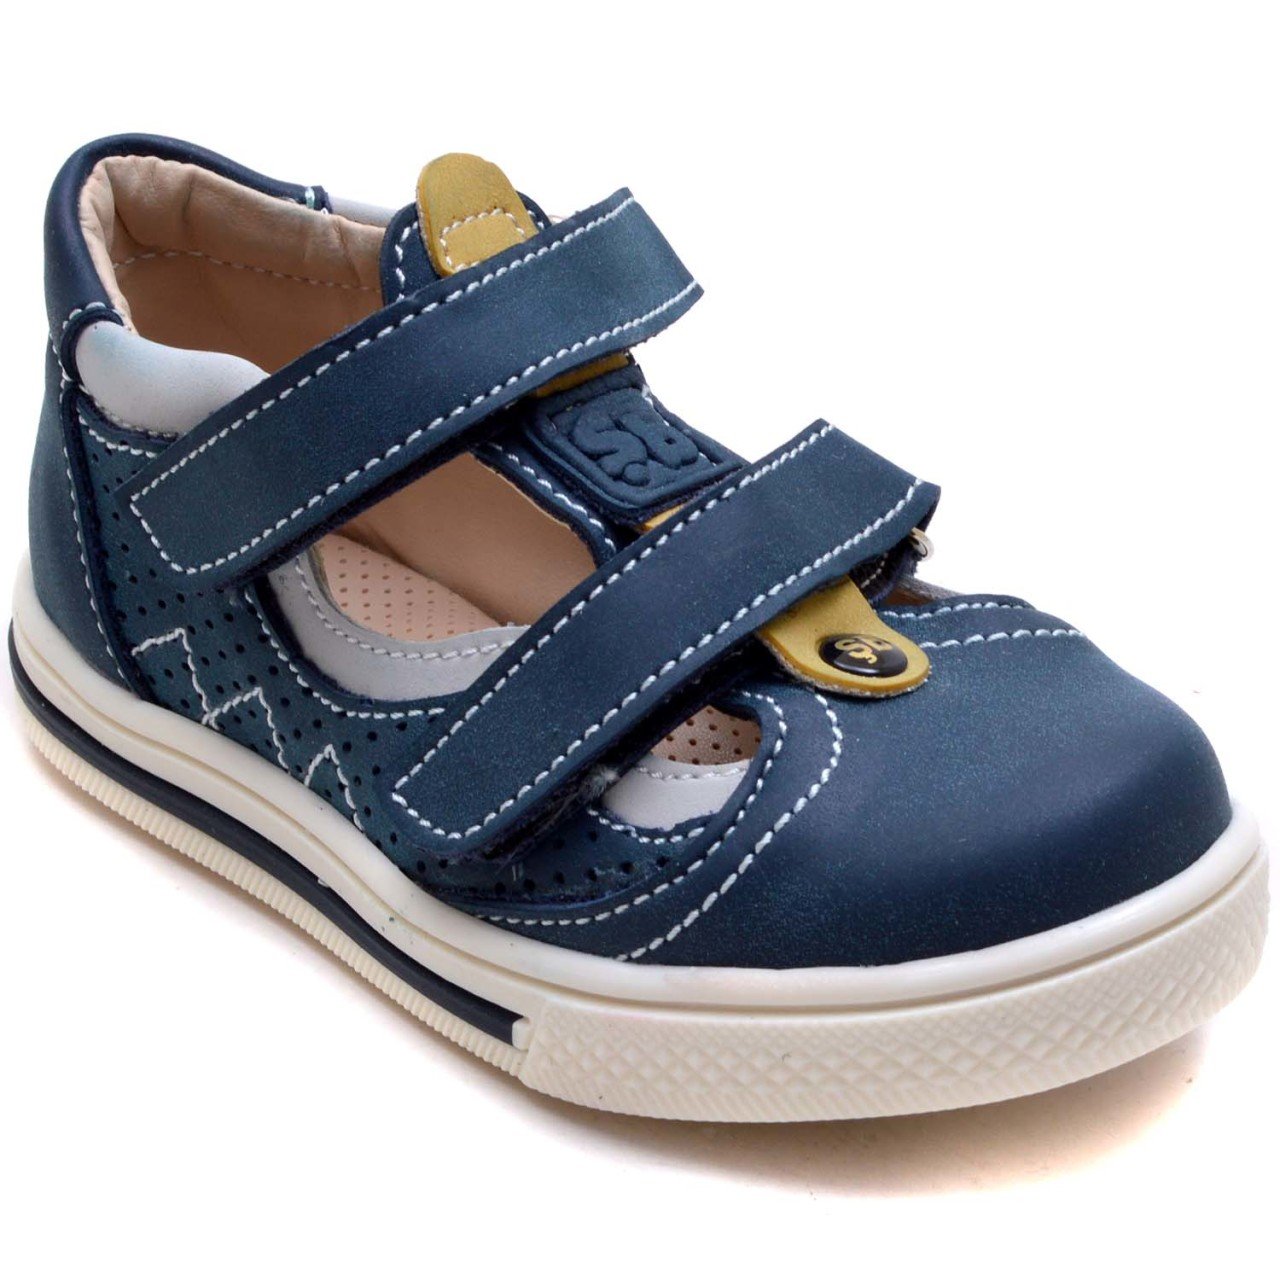 SB-366 Erkek Çocuk Bebe Sandalet - Mavi